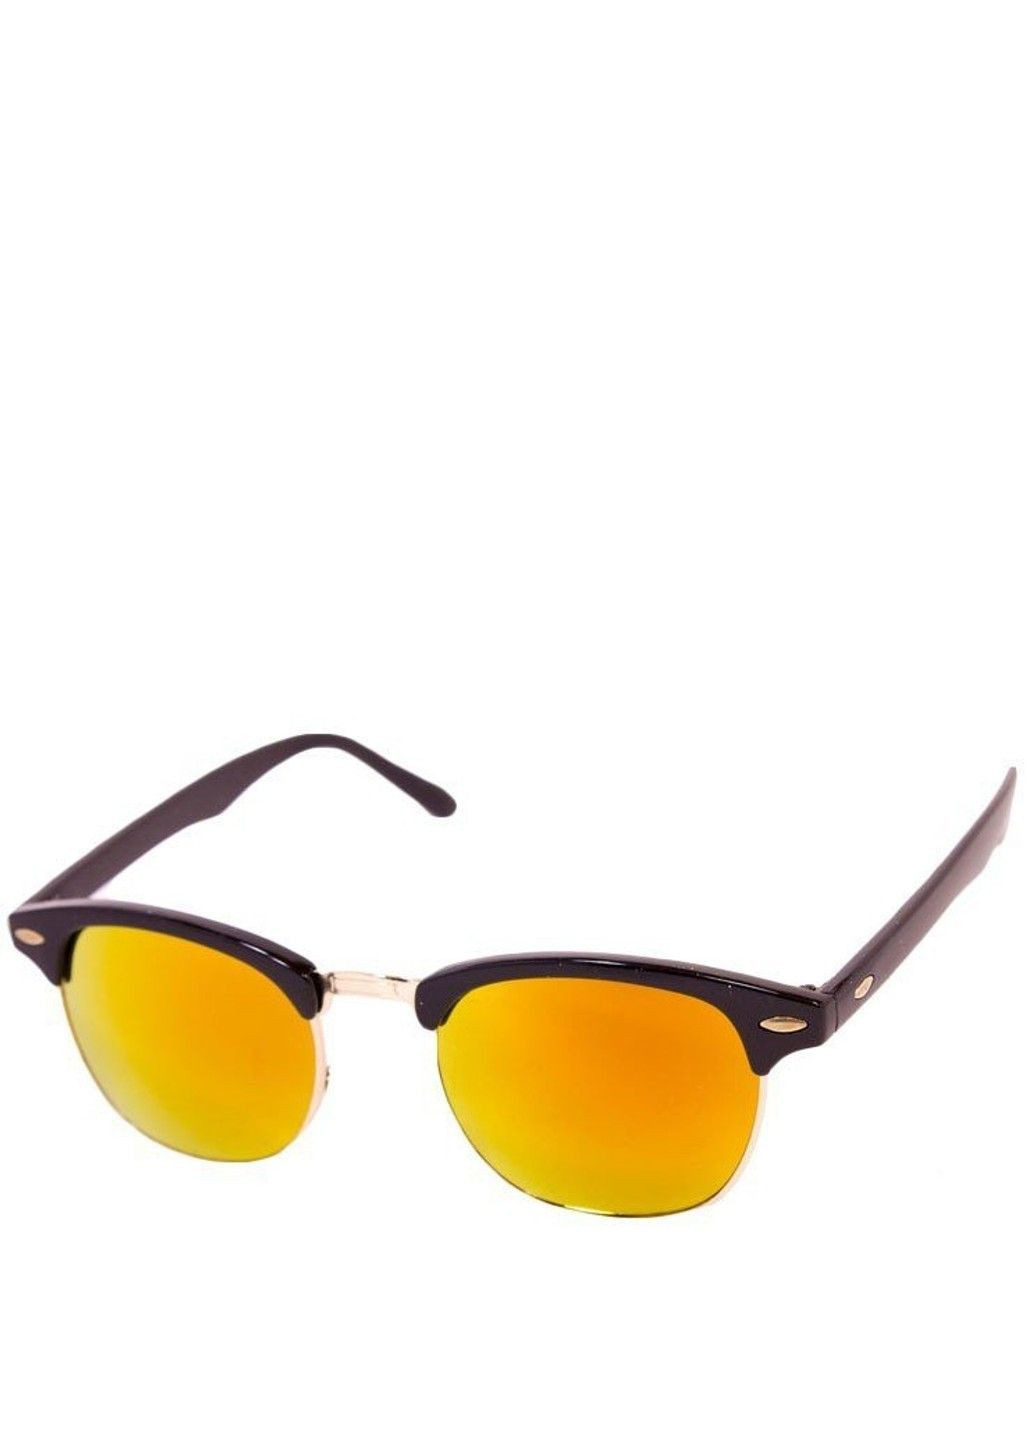 Солнцезащитные очки унисекс 9904-5 BR-S (291984178)